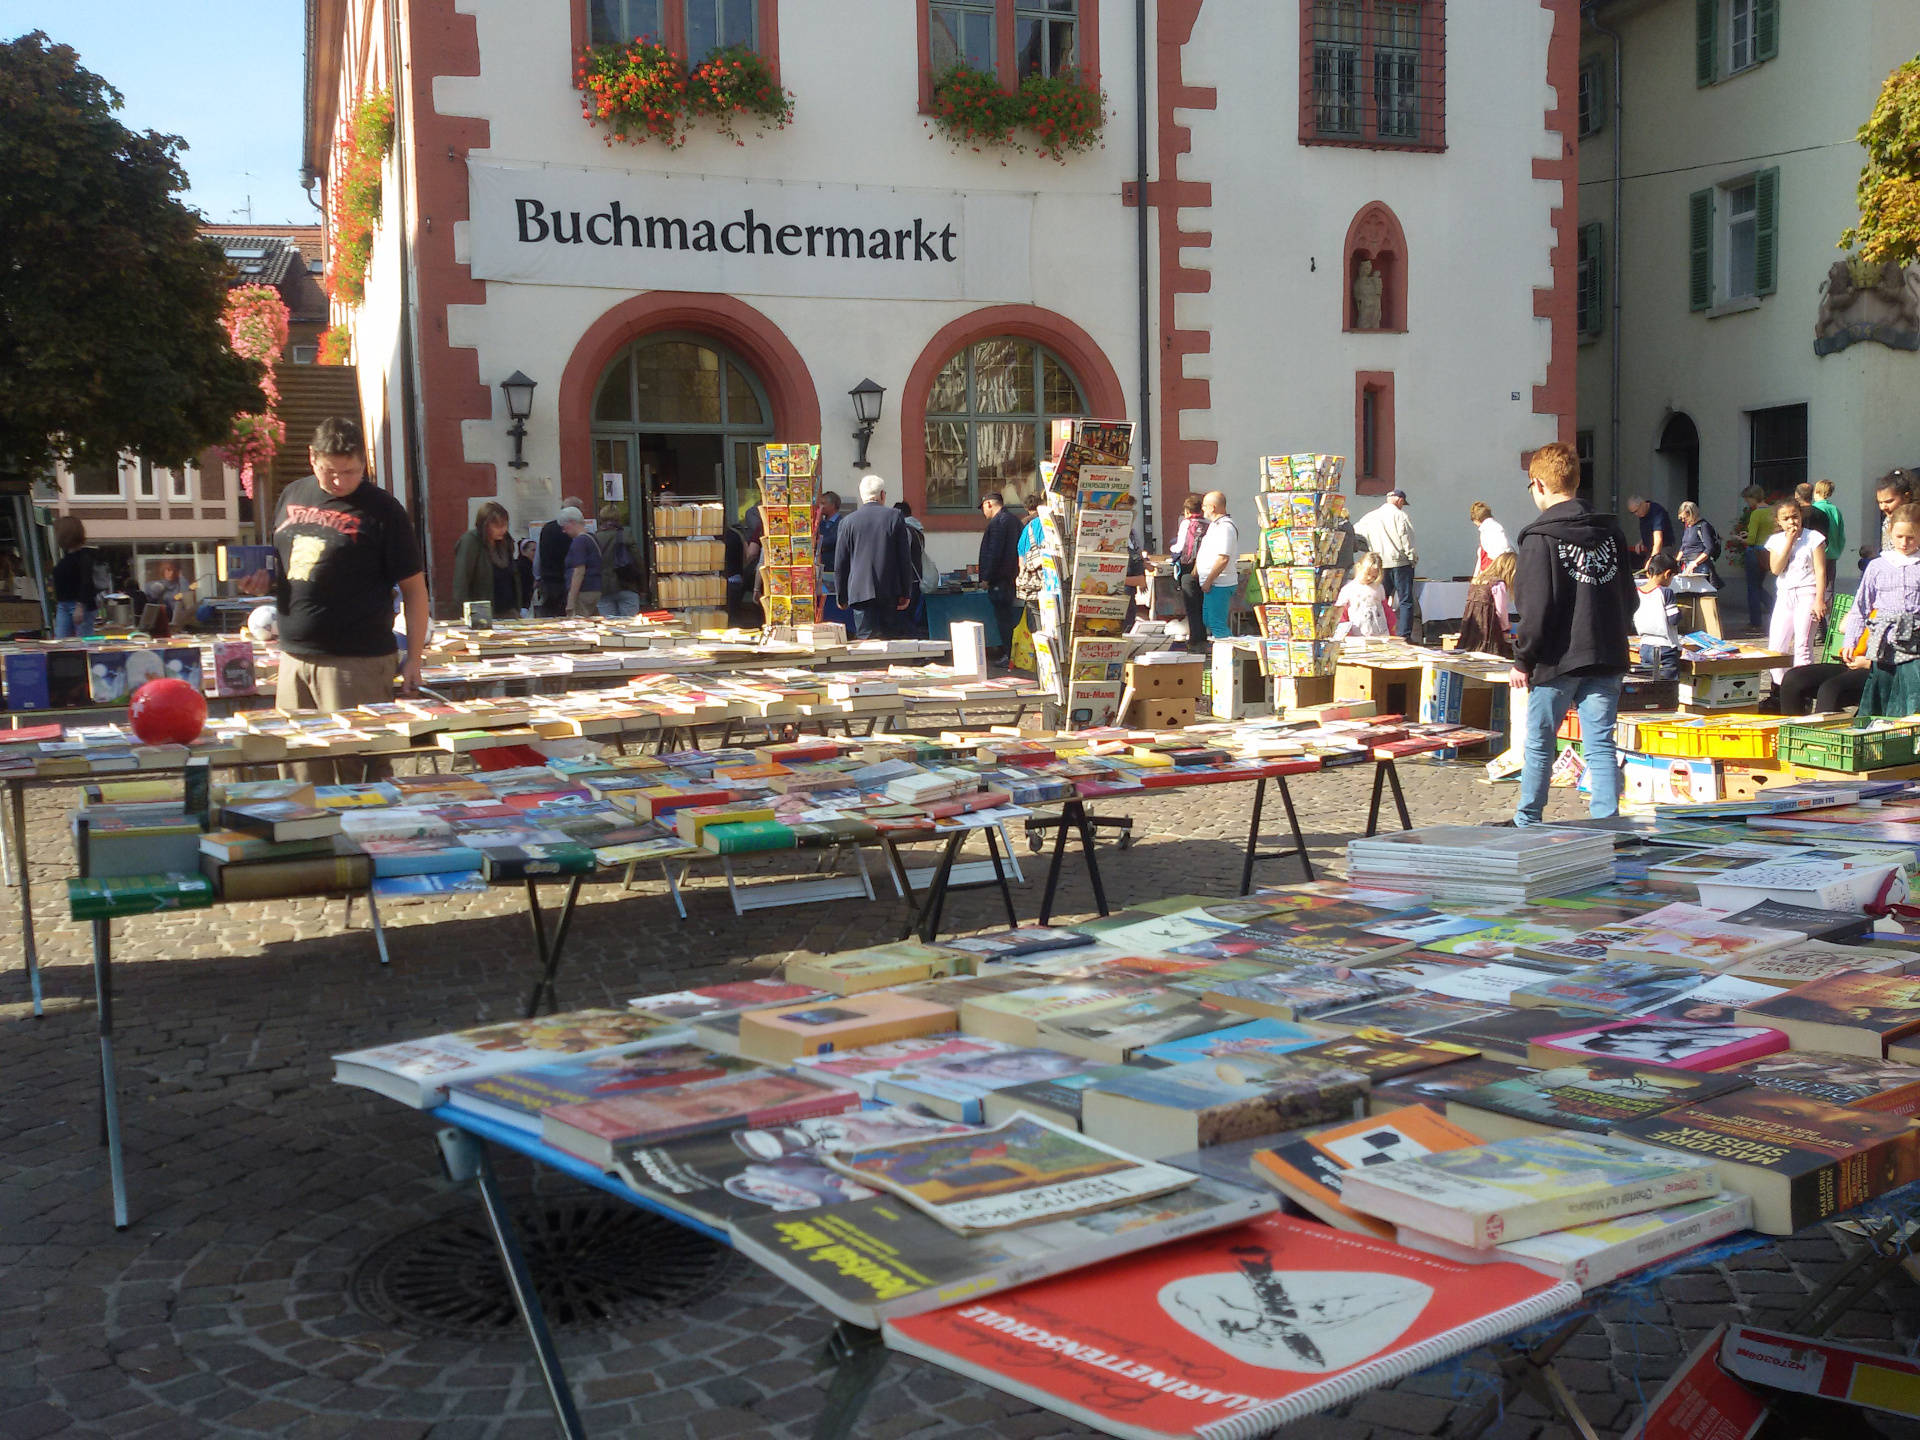 13. Buchmachermarkt in Mosbach